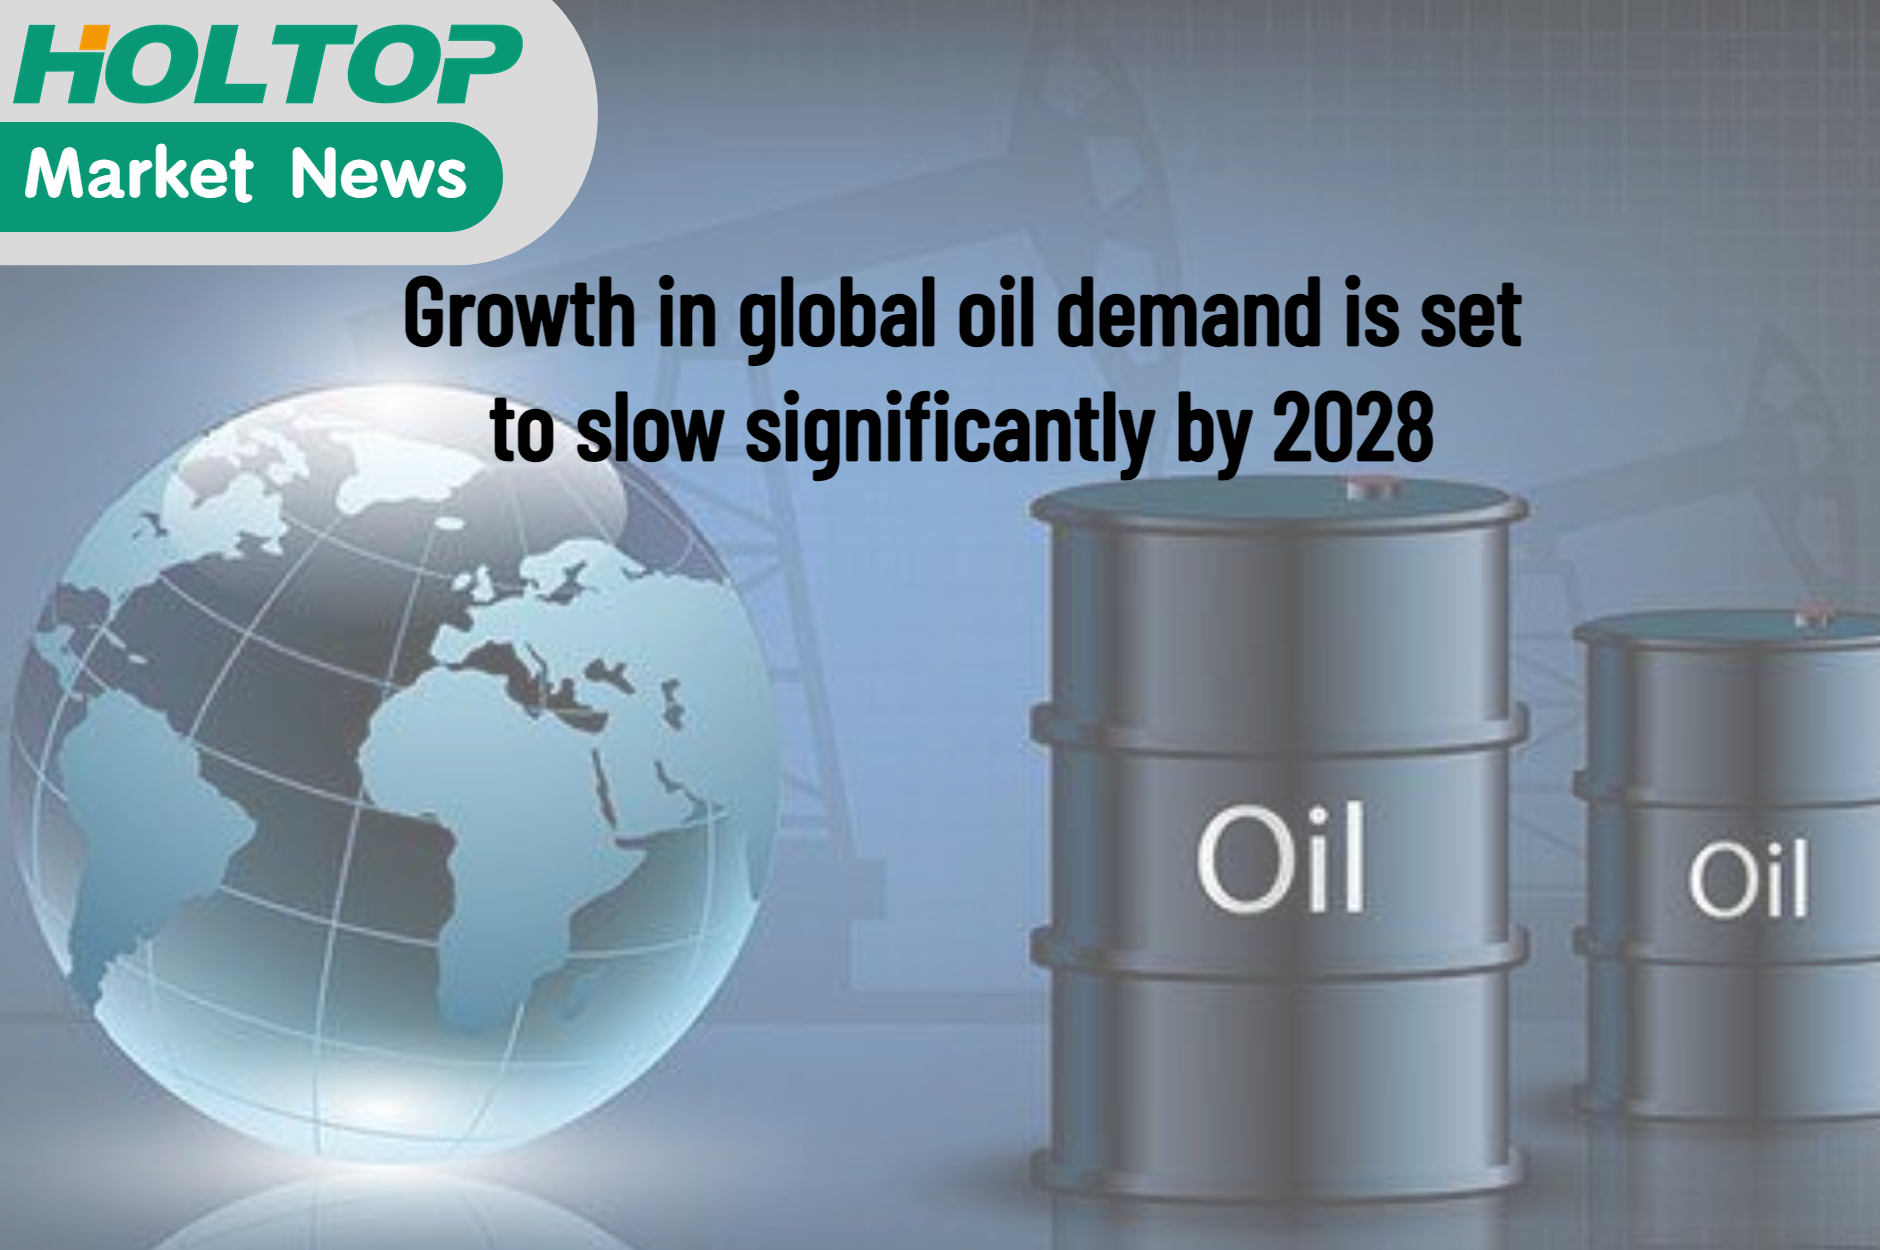 Das Wachstum der weltweiten Ölnachfrage dürfte sich bis 2028 deutlich verlangsamen